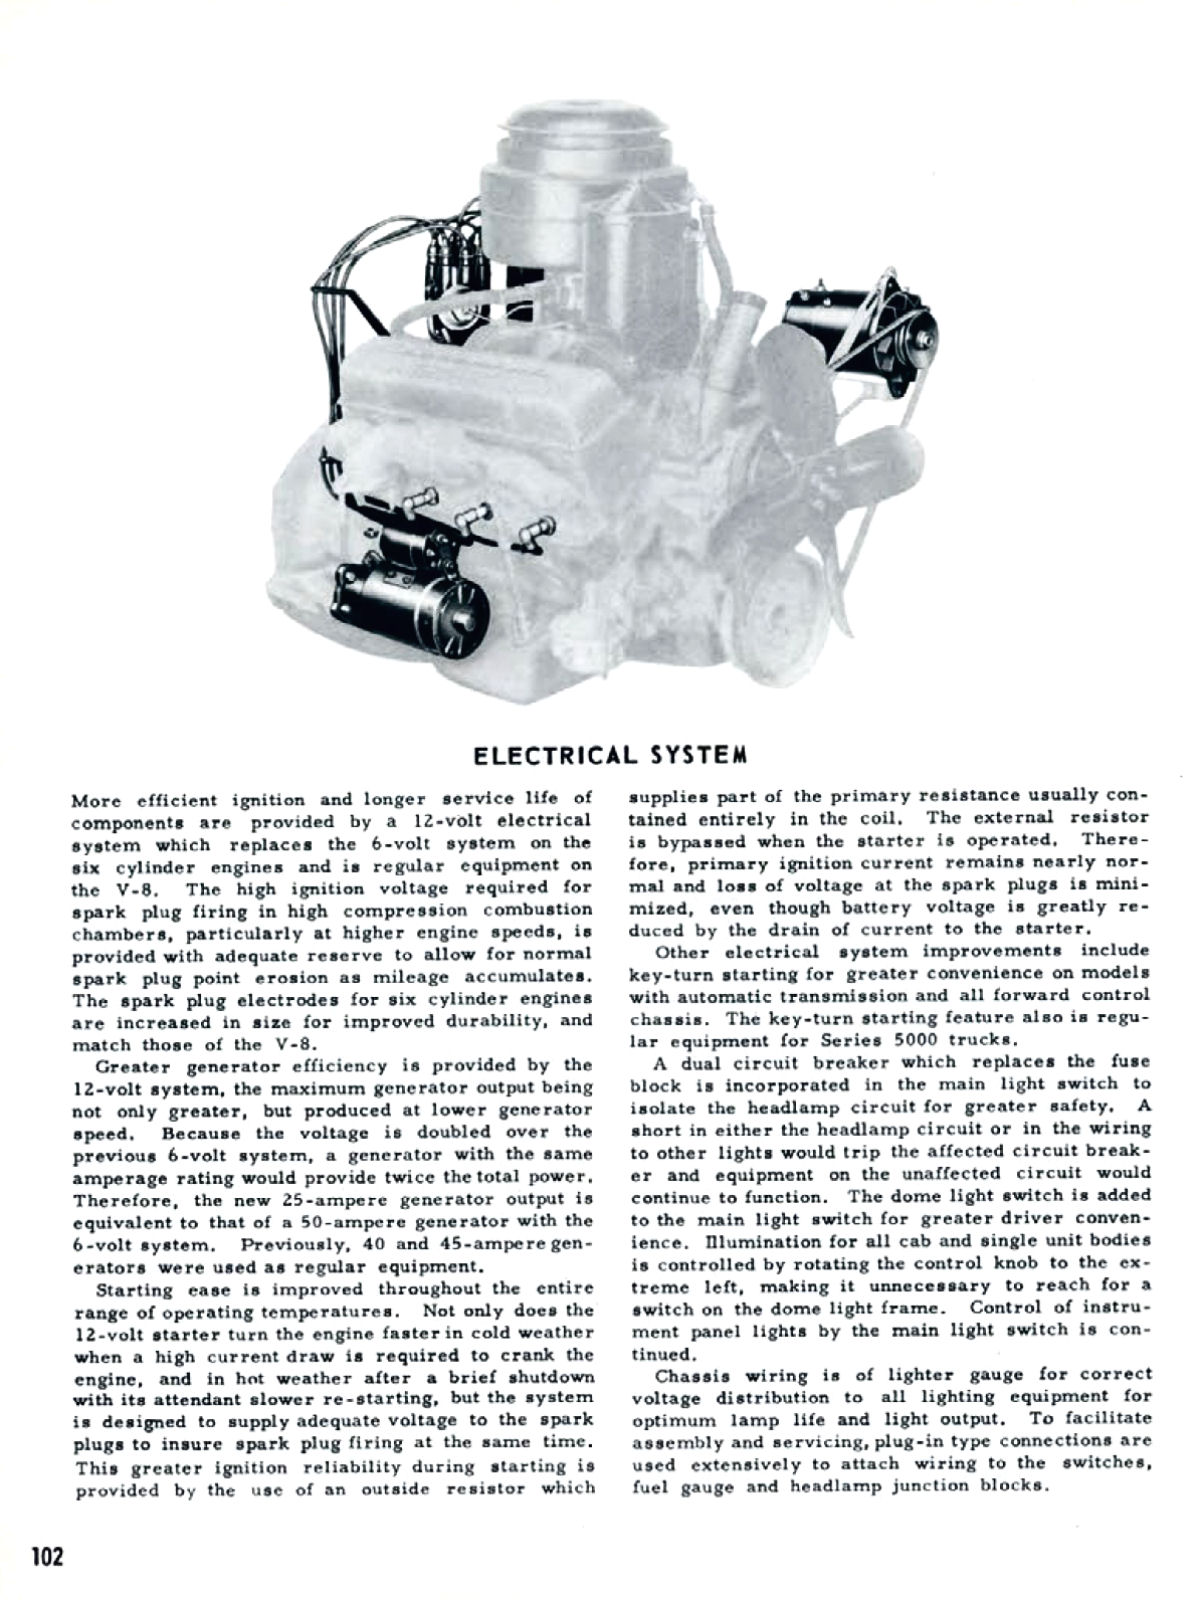 1955_Chevrolet_Truck_Engineering_Features-102